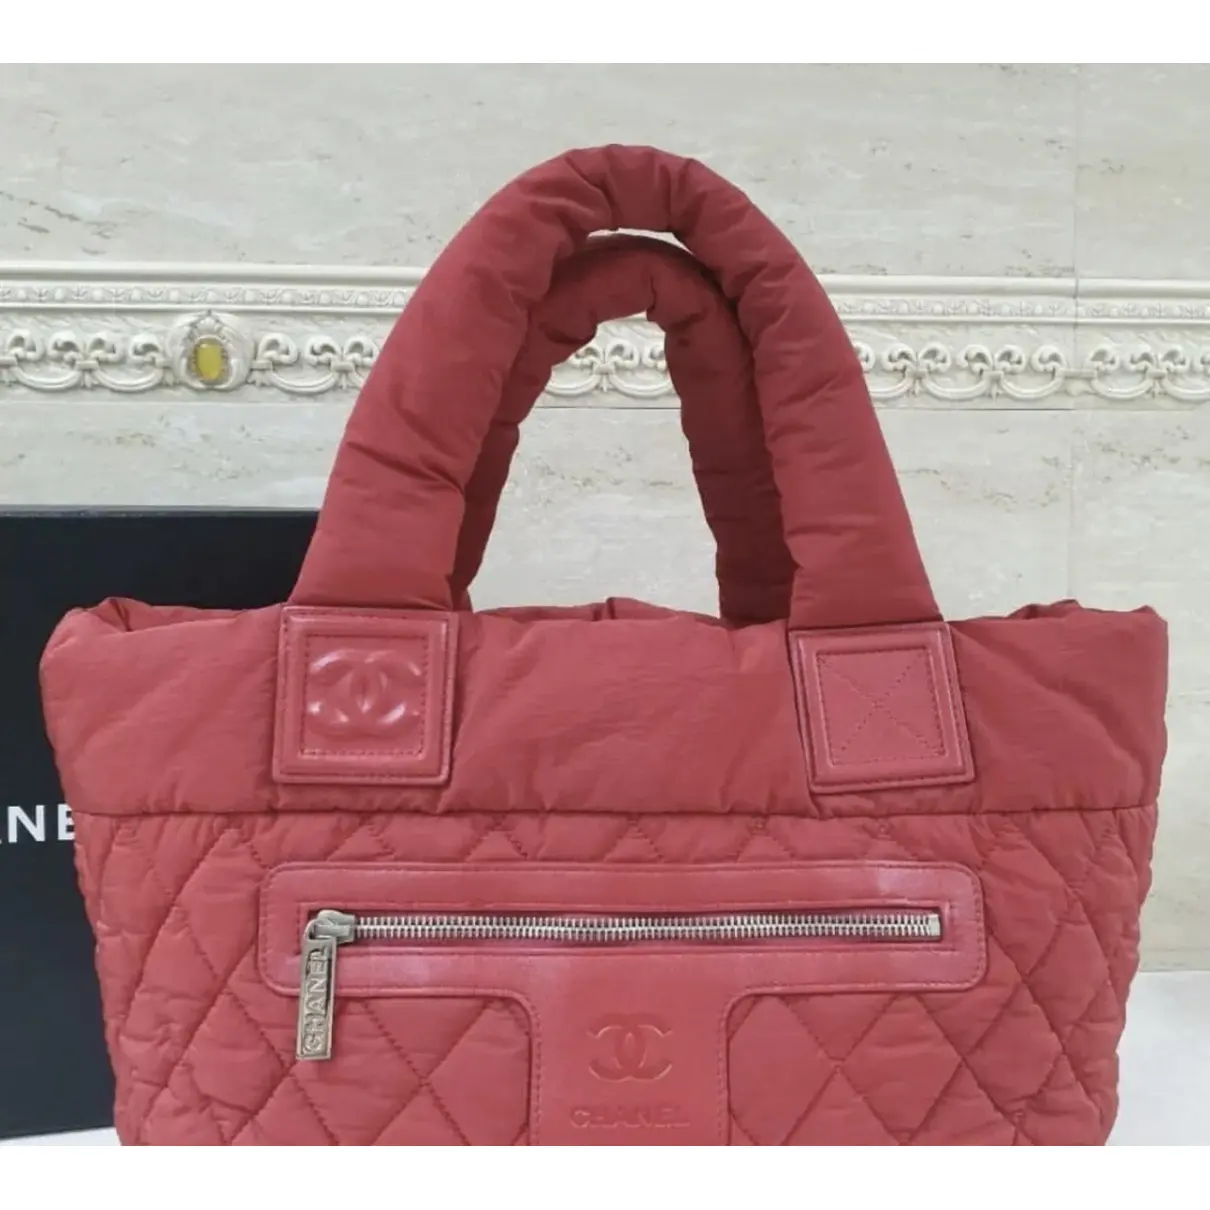 Buy Chanel Cocoon handbag online - Vintage